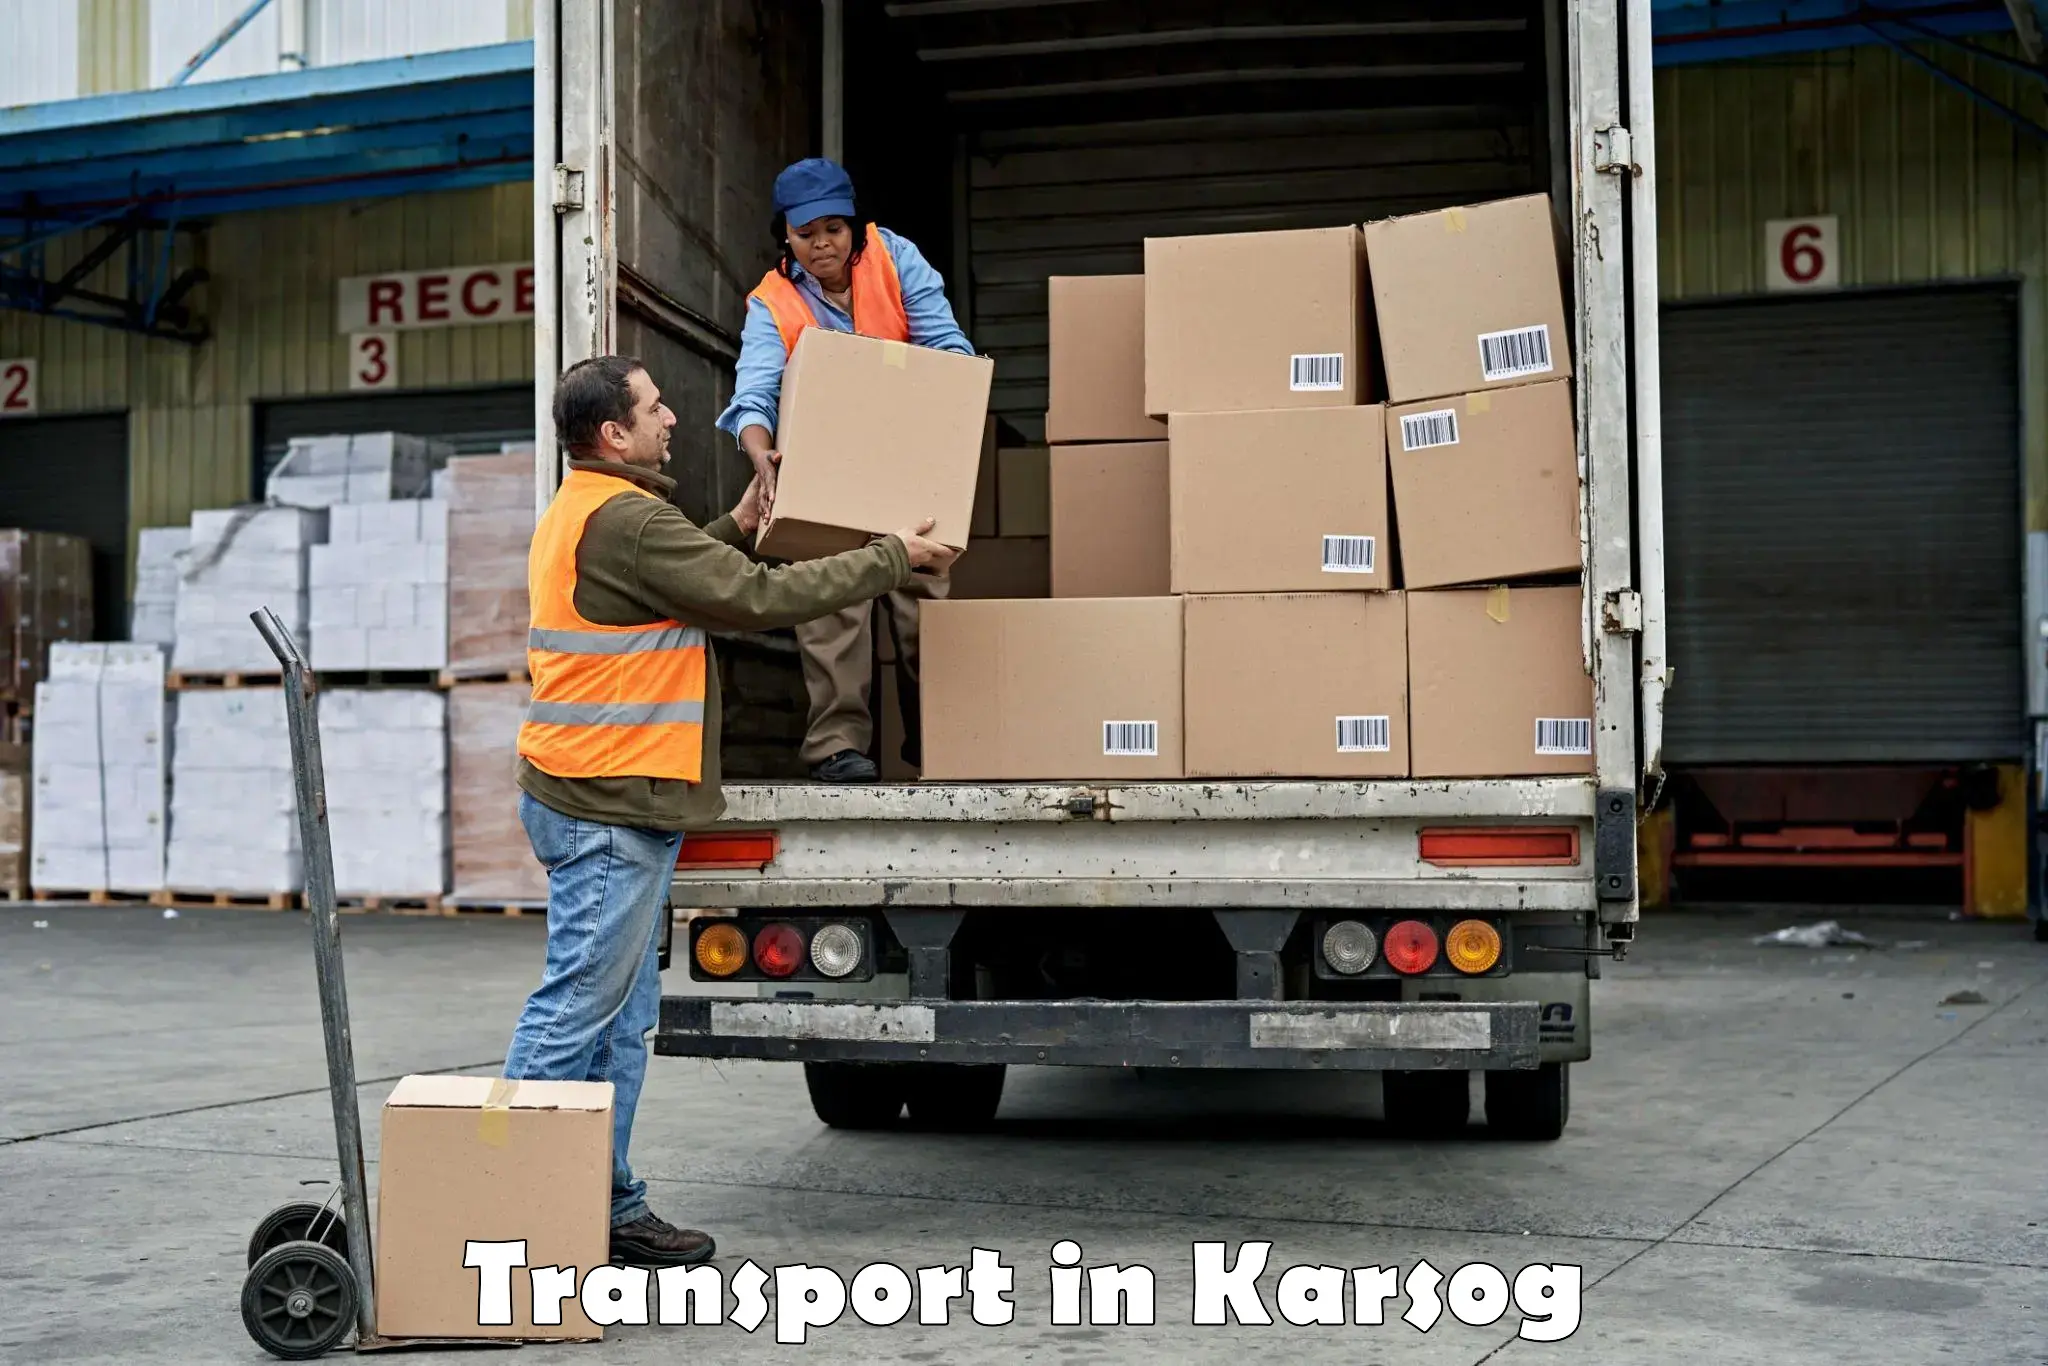 Luggage transport services in Karsog